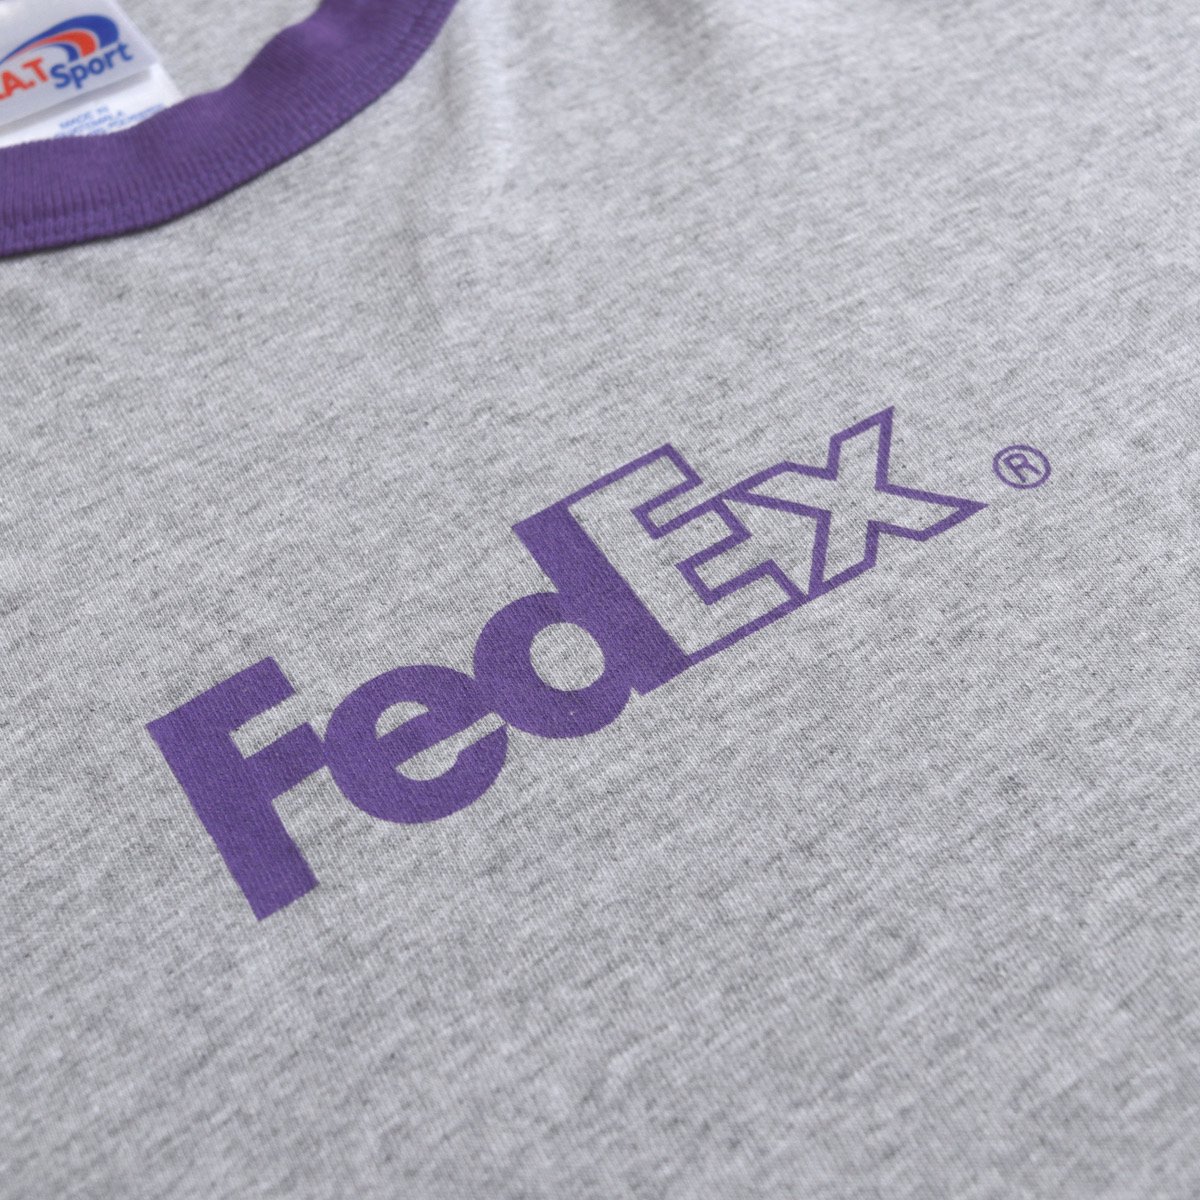 レディース] ビッグサイズ FedEx 企業 ロゴプリント リンガーTシャツ ...